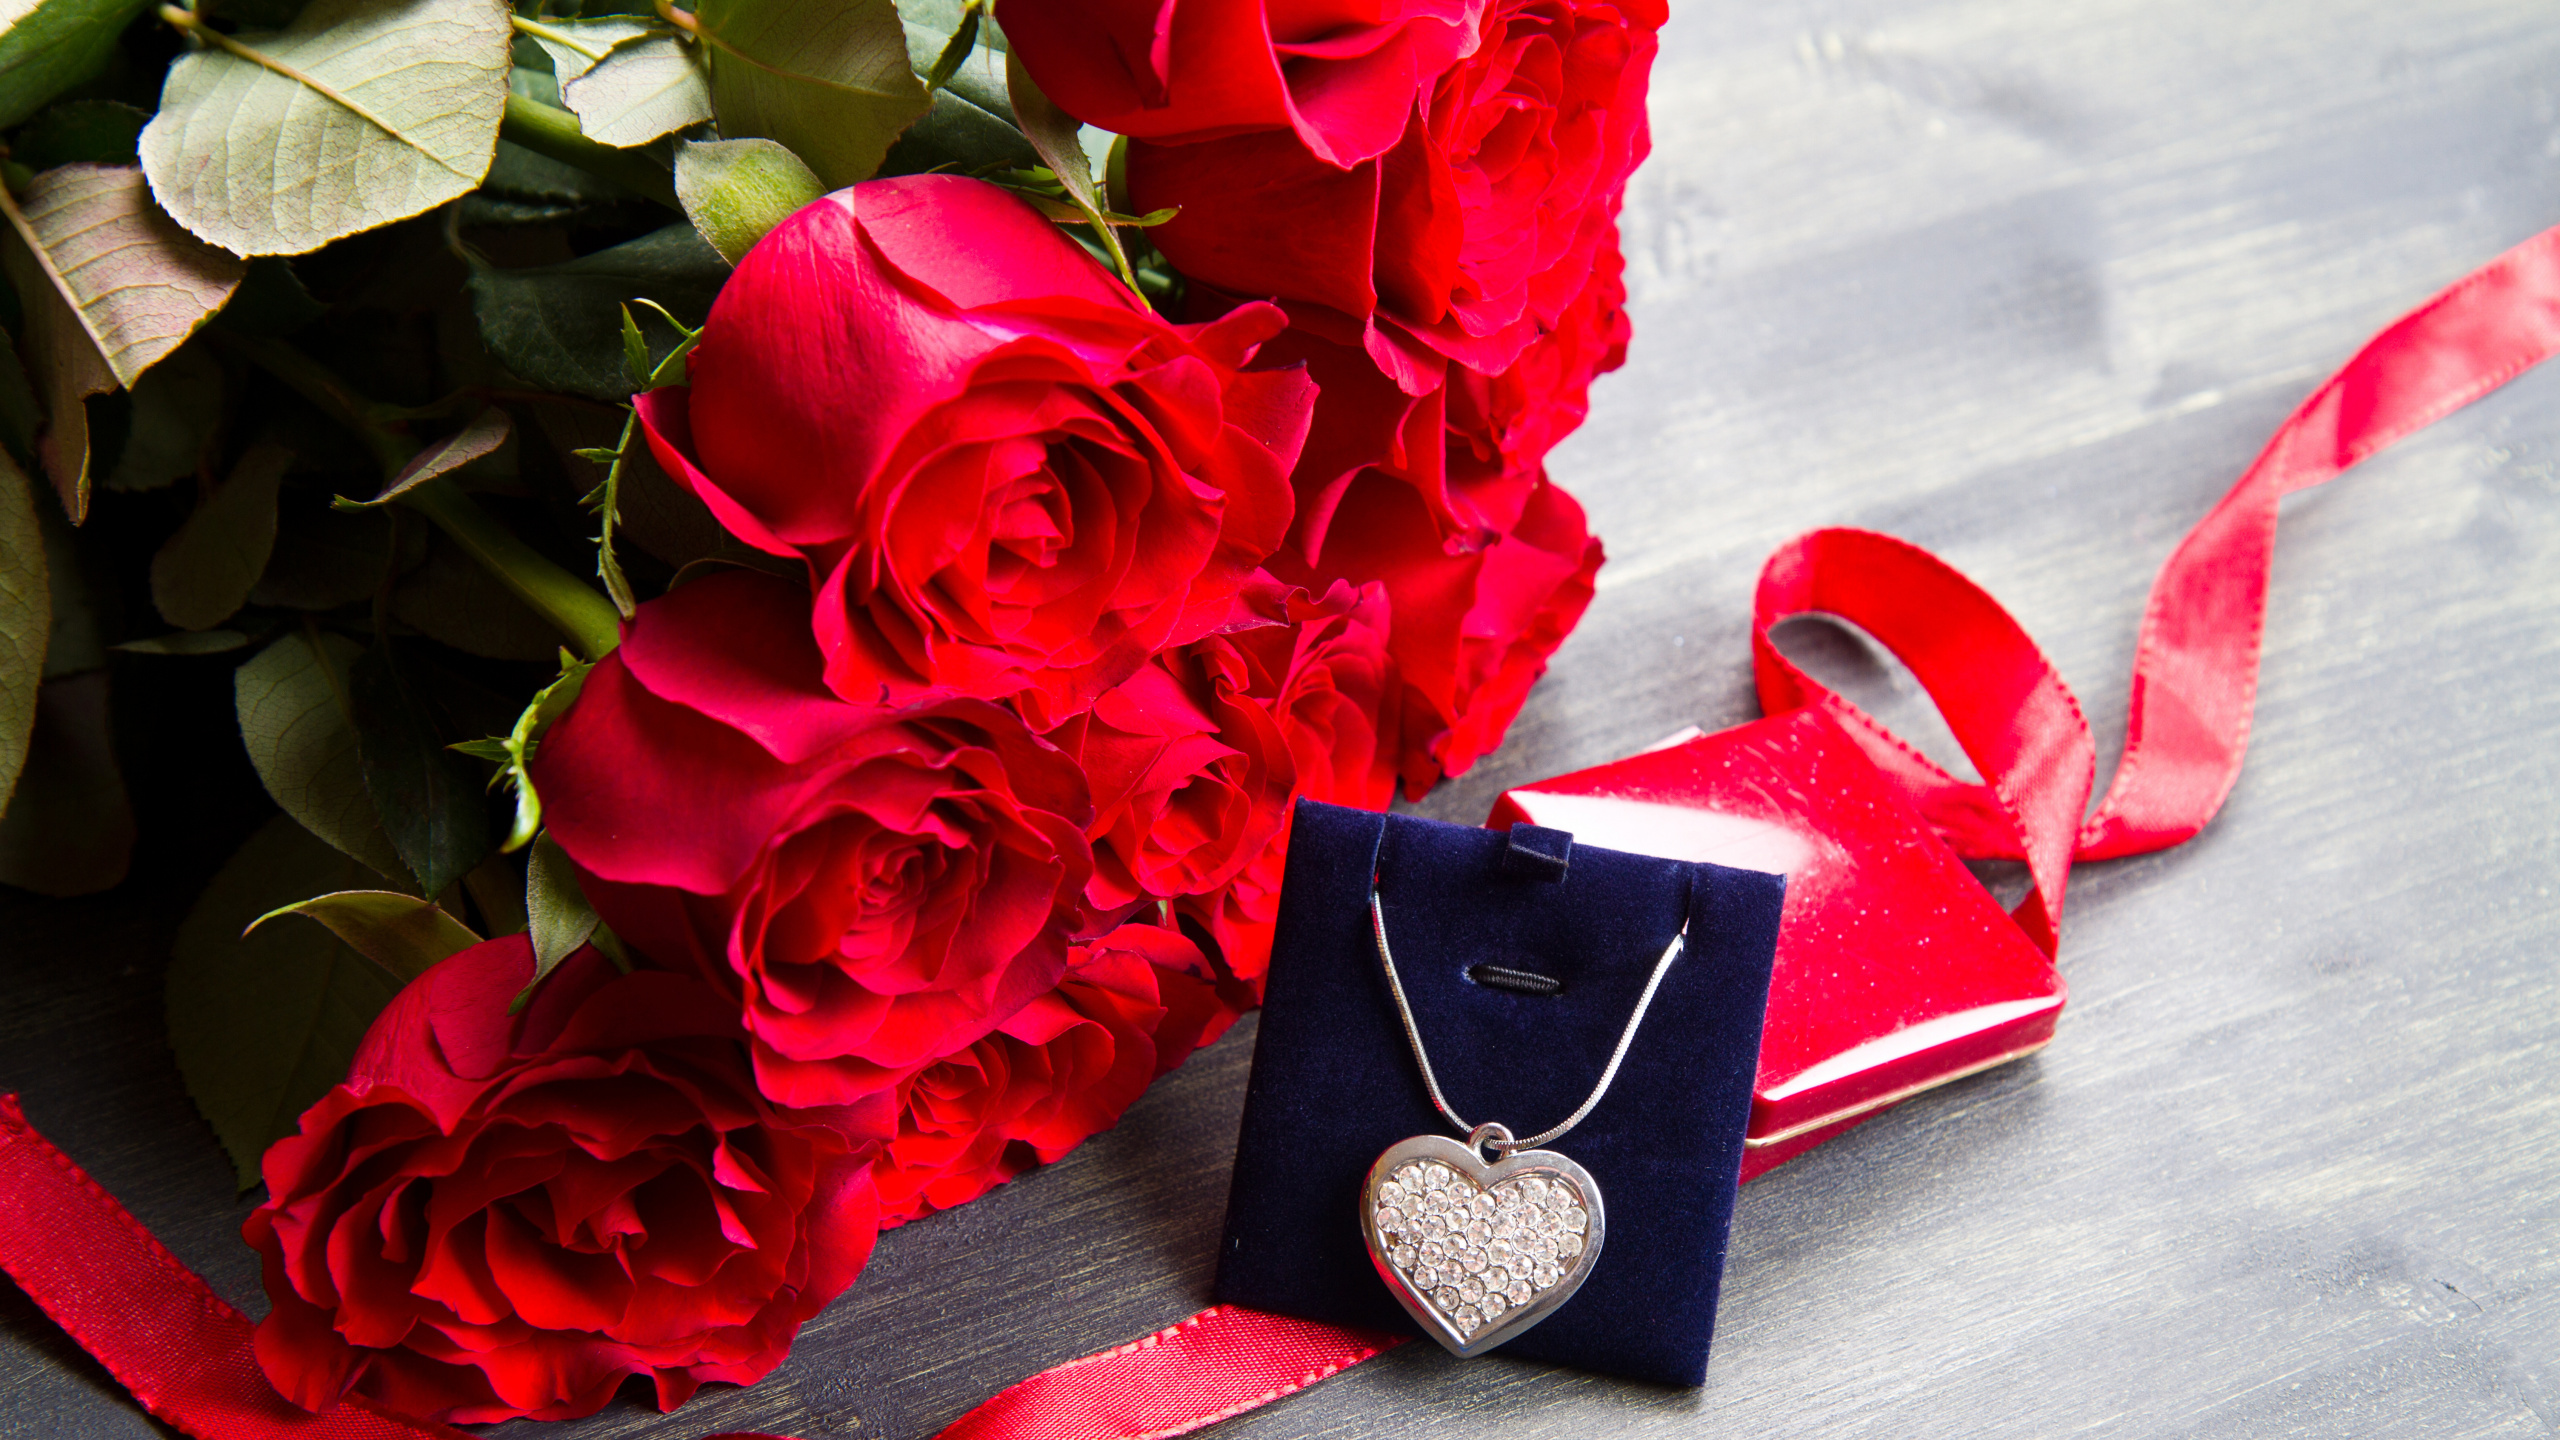 心脏, 礼物, 红色的, 切花, 玫瑰花园 壁纸 2560x1440 允许